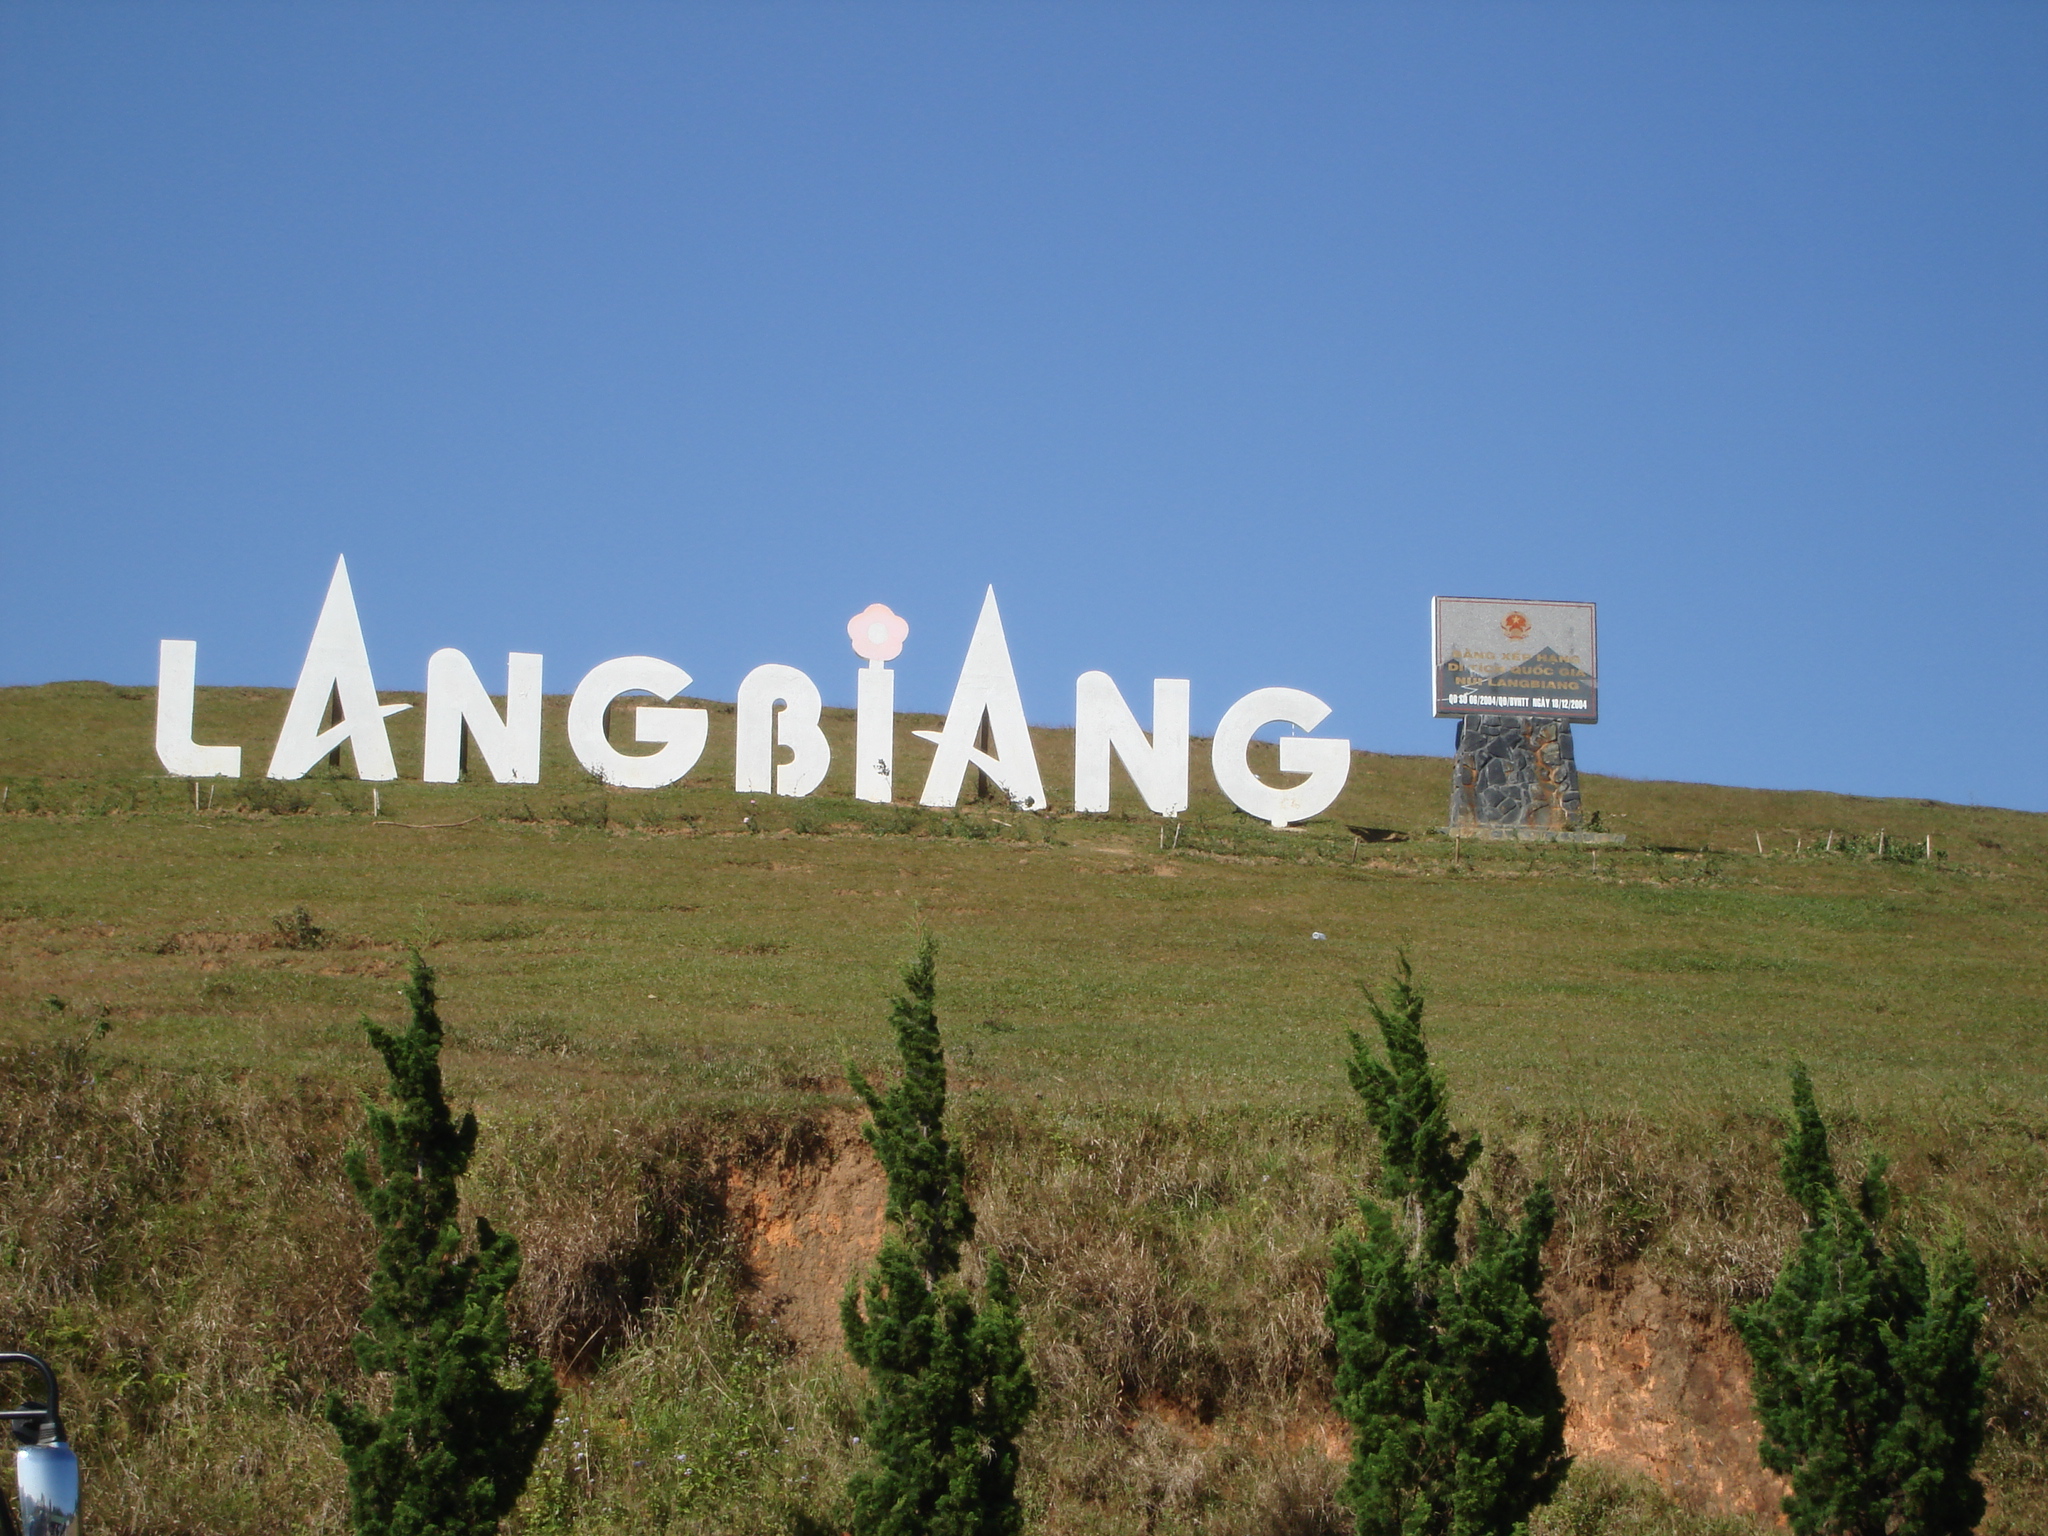 Nếu bạn đang muốn khám phá vẻ đẹp ở miền núi phía Nam, không thể bỏ qua núi Langbiang. Hãy đón xem những bức ảnh đẹp tuyệt vời của núi Langbiang để cảm nhận vẻ đẹp hùng vĩ, thơ mộng và sự lãng mạn vốn có của miền núi phía Nam Việt Nam.